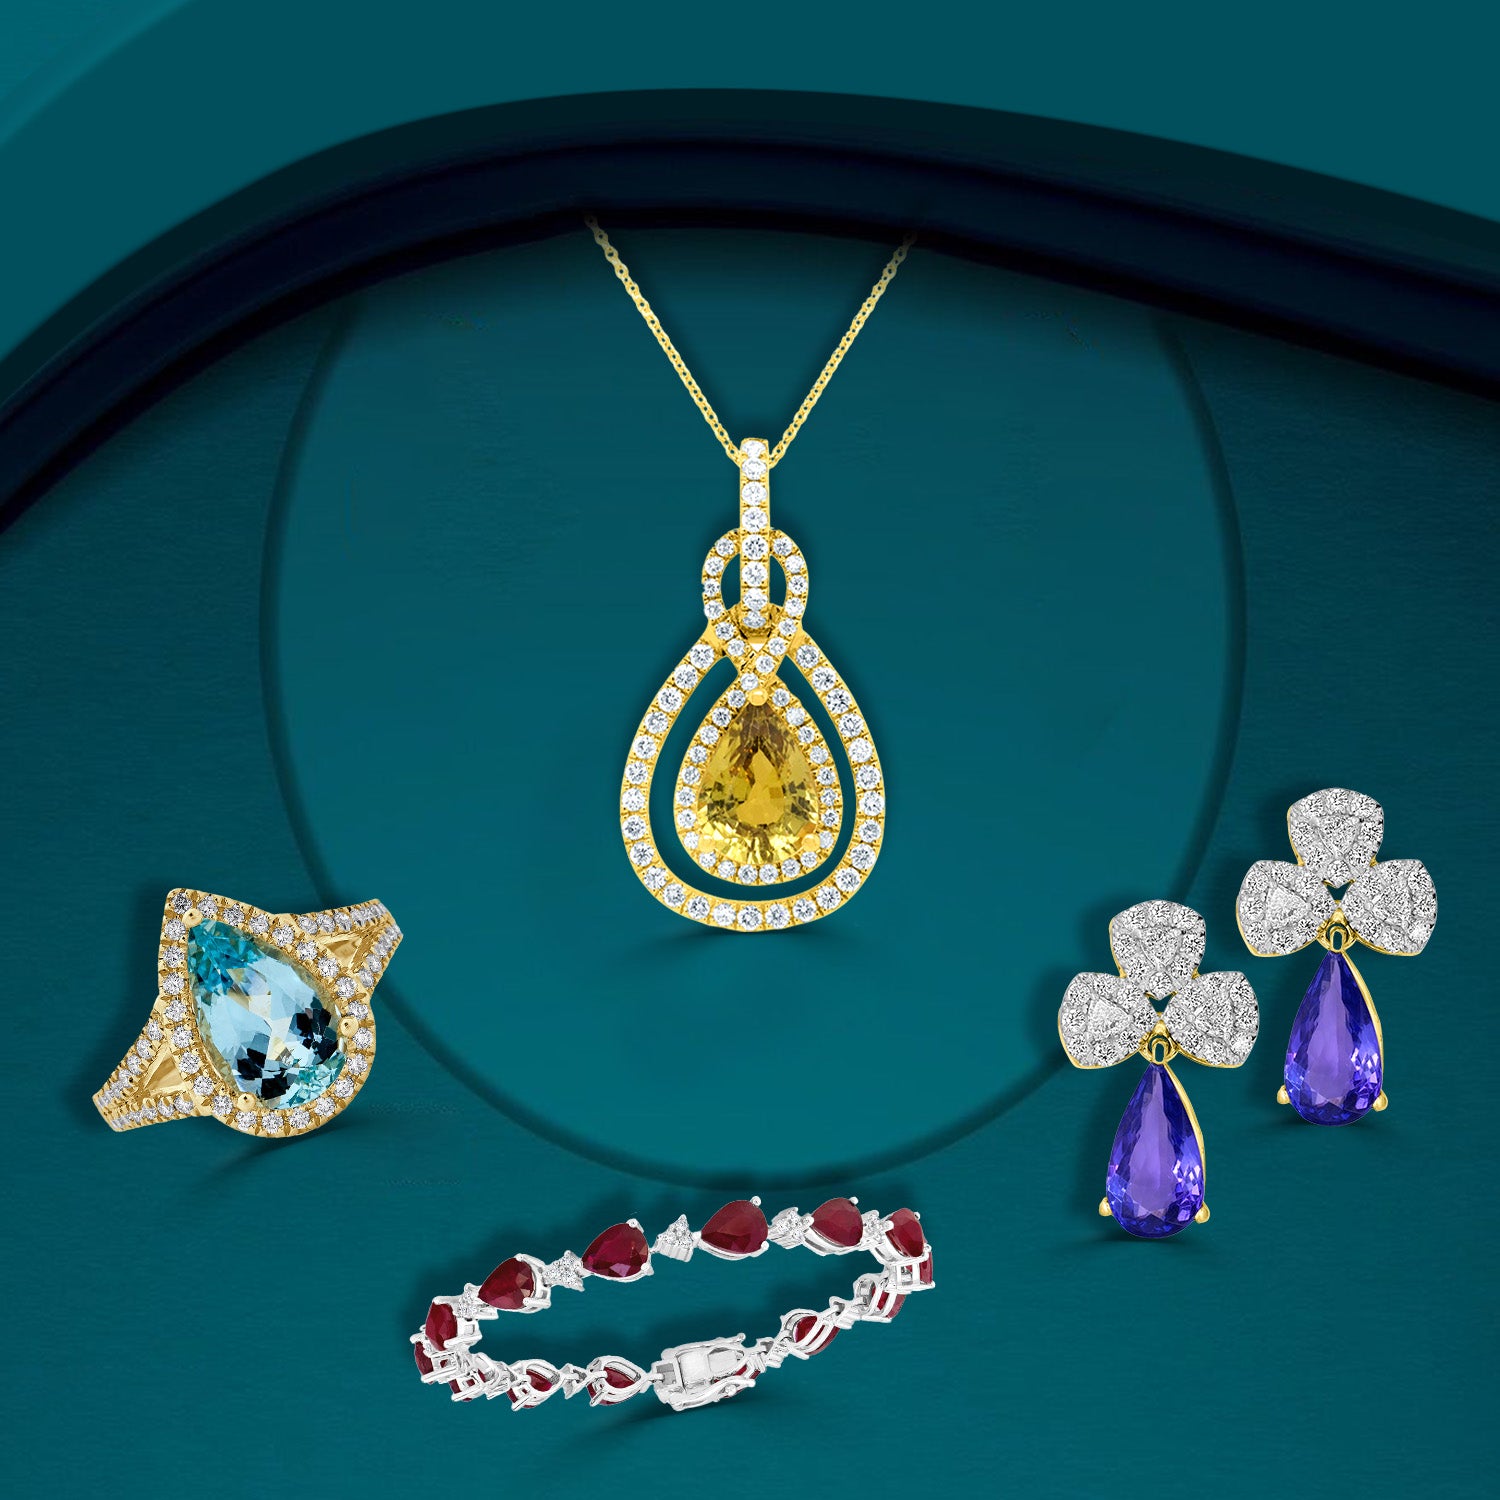 Buy jewellery online